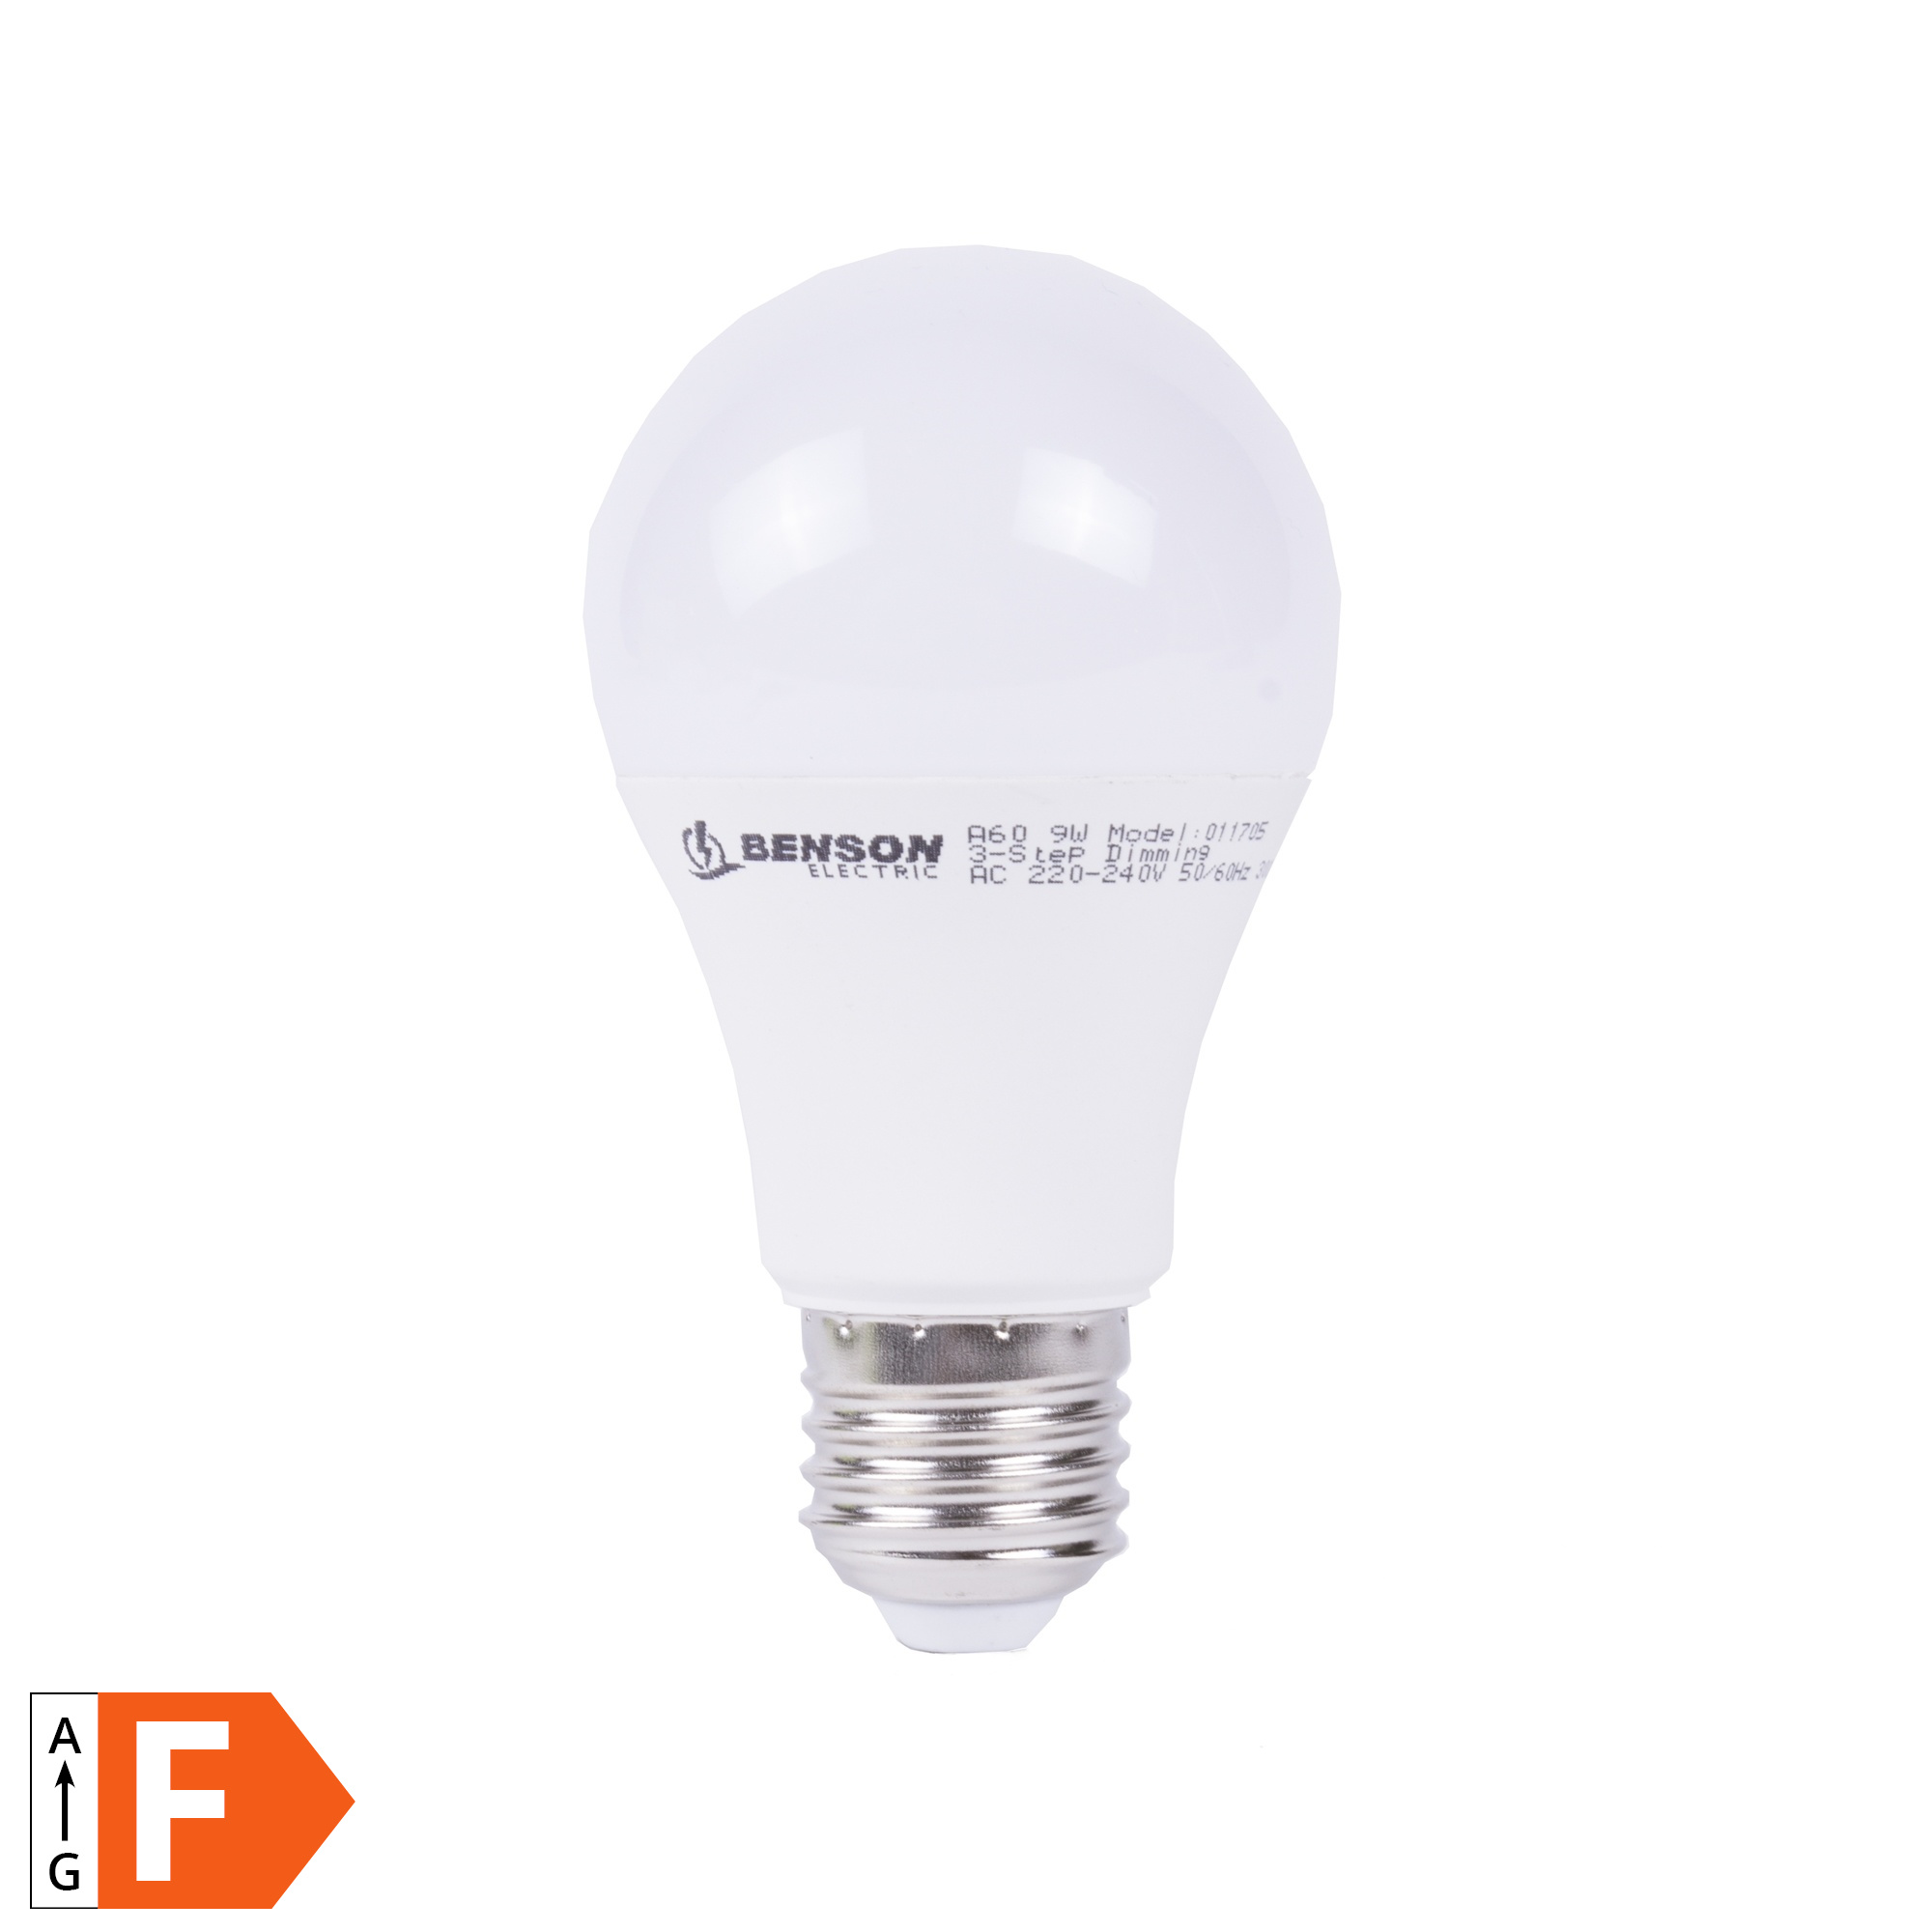 Dimming Lamp - 3 Standen - 0.9 9 Watt - E27 - Zonder Dimmer 2Cheap